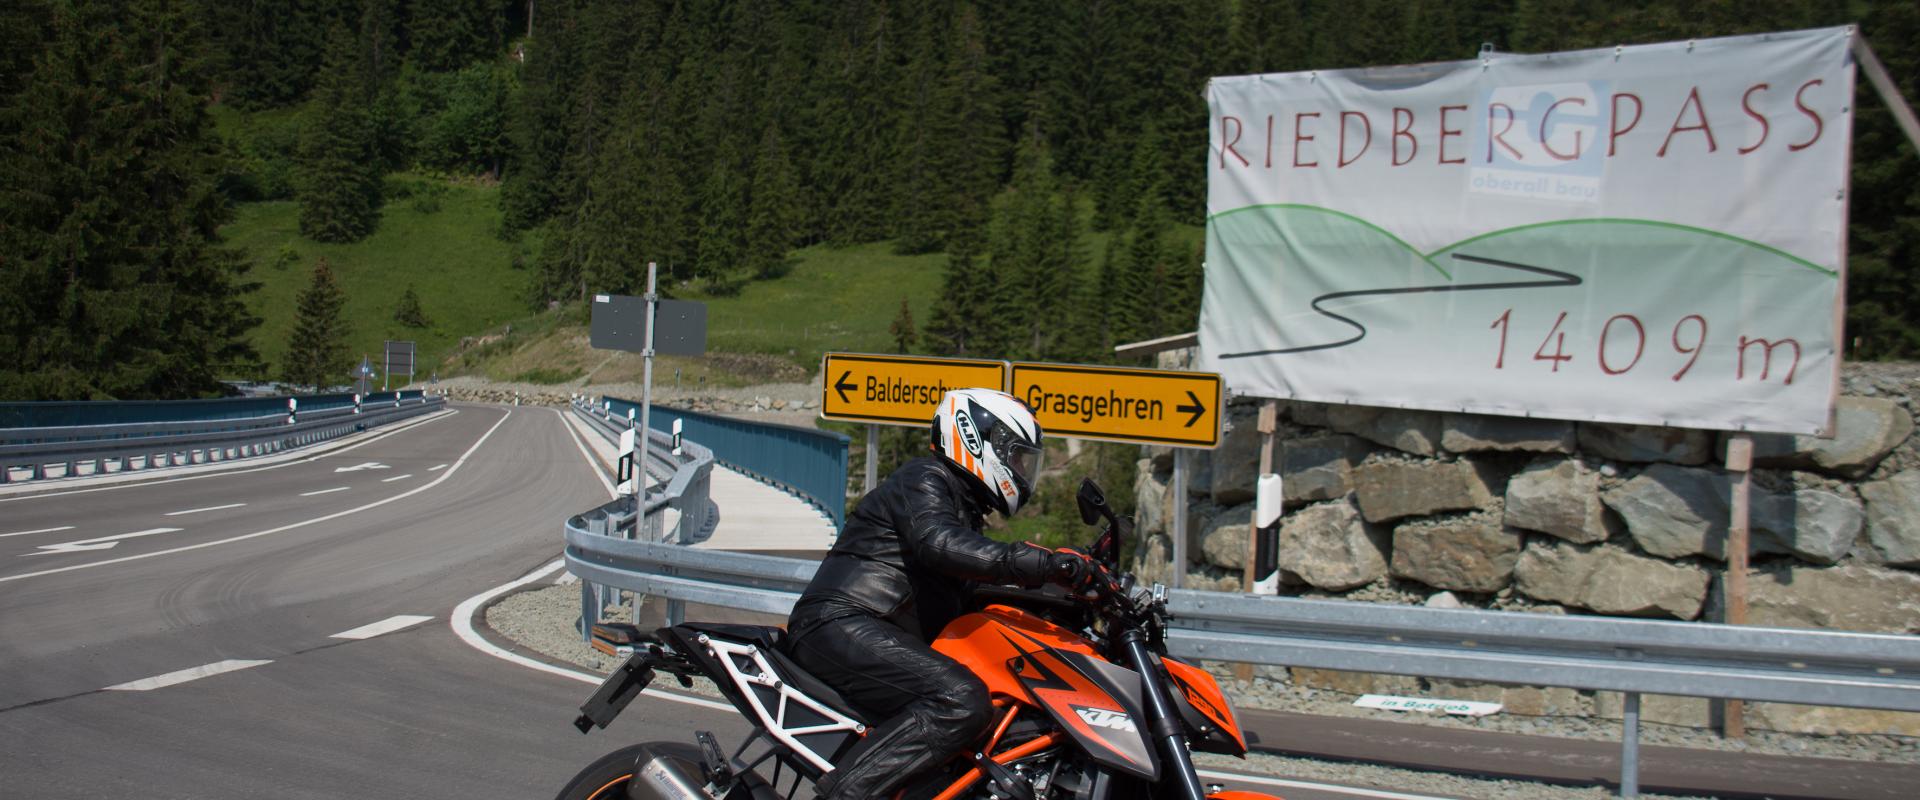 Ein Motorradfahrer unterwegs auf dem Riedbergpass 